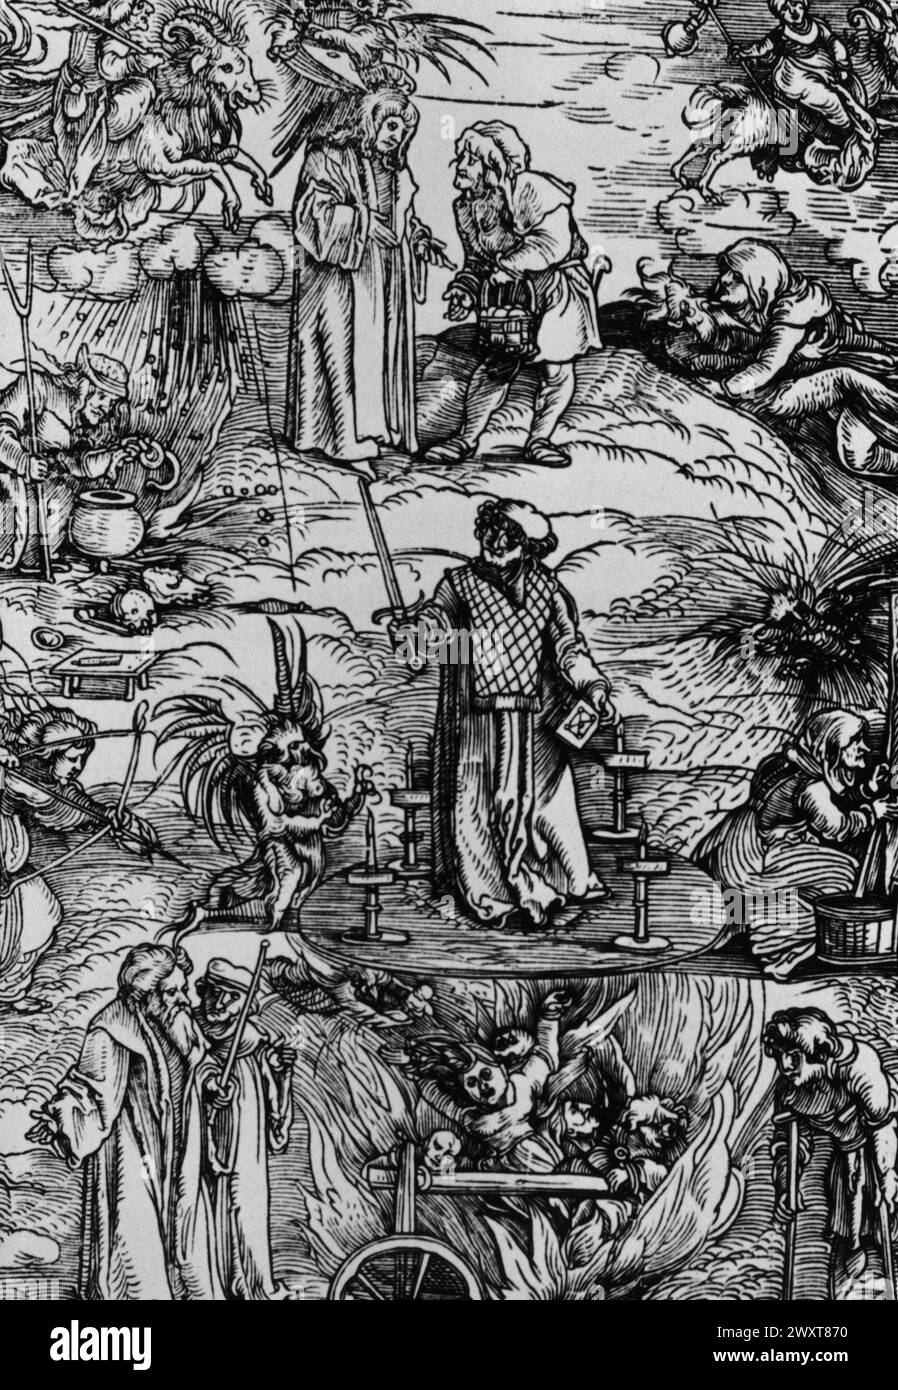 Un magicien entouré de scènes de sorcellerie, gravé sur bois du XVIe siècle Banque D'Images